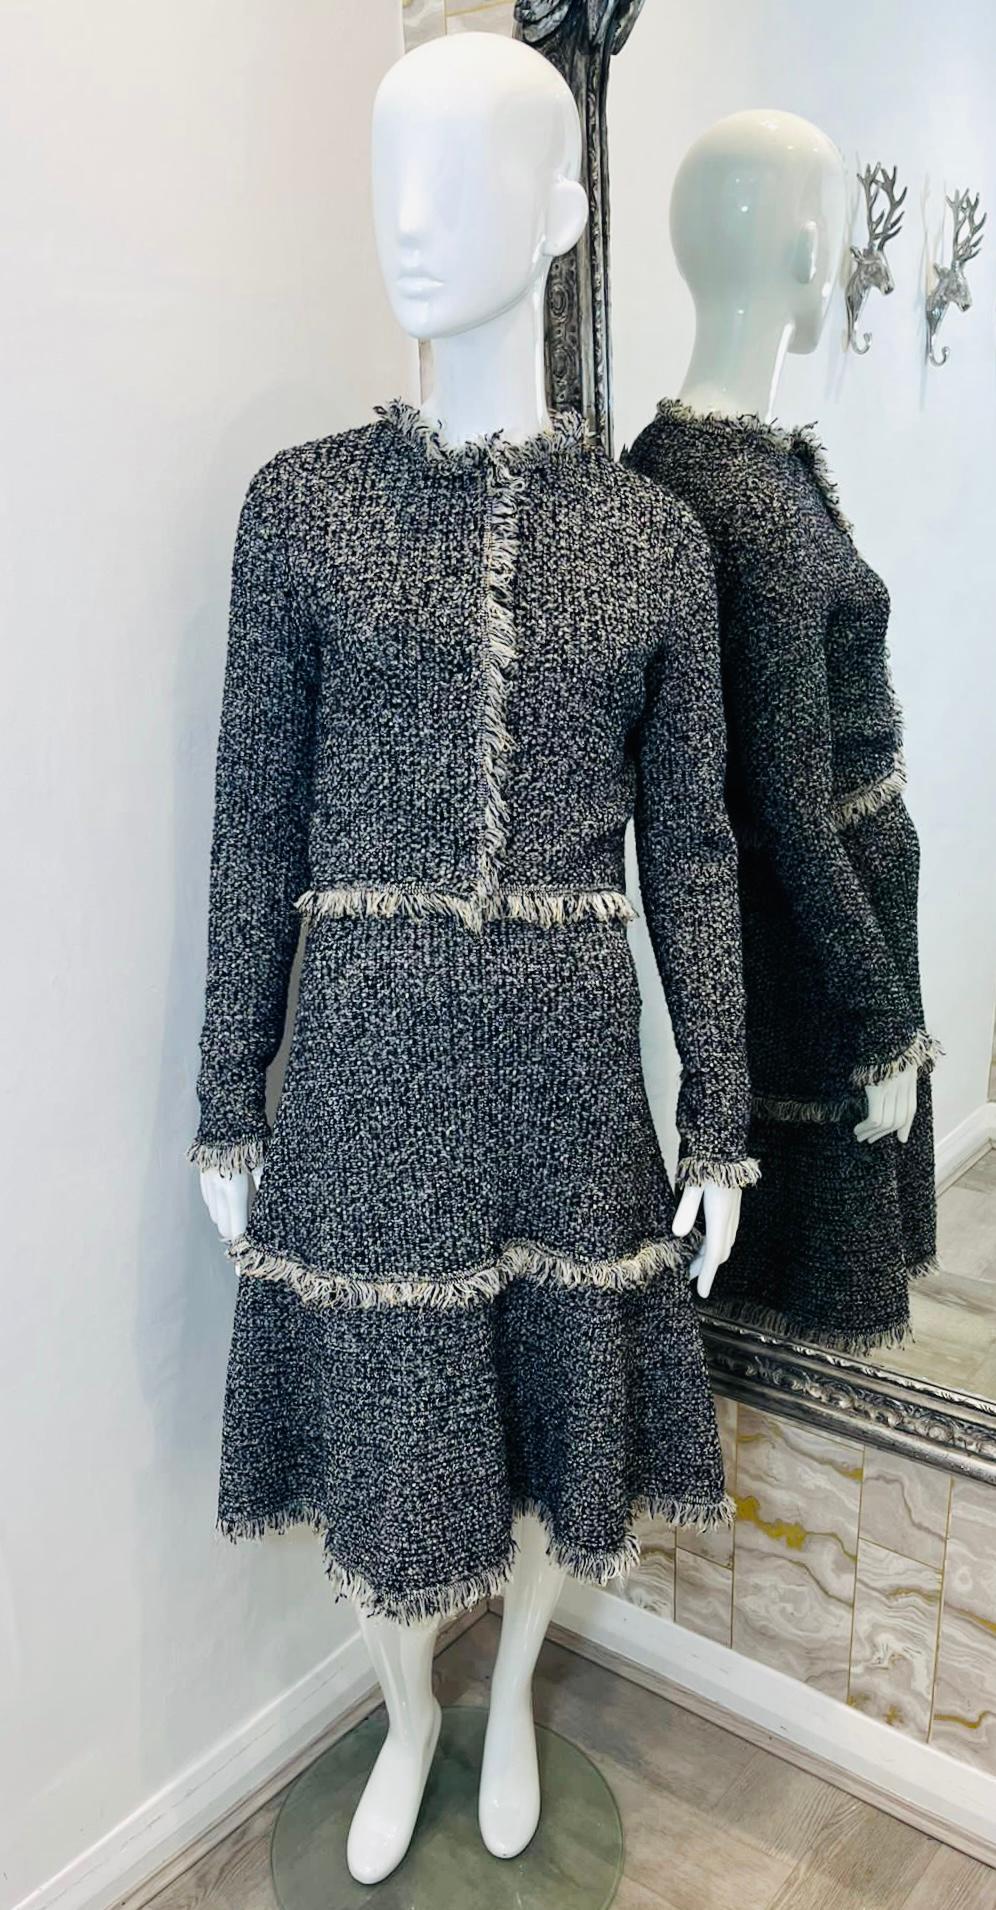 Oscar De La Renta Zweiteiliges Set aus Kleid und Jacke aus Wolle

Schwarz-weiß gemustertes Set, bestehend aus einem Kleid in A-Linie und einer Kurzjacke mit hellgrauen Fransenbesätzen.

Ärmelloses Kleid mit Rundhalsausschnitt, knielang und